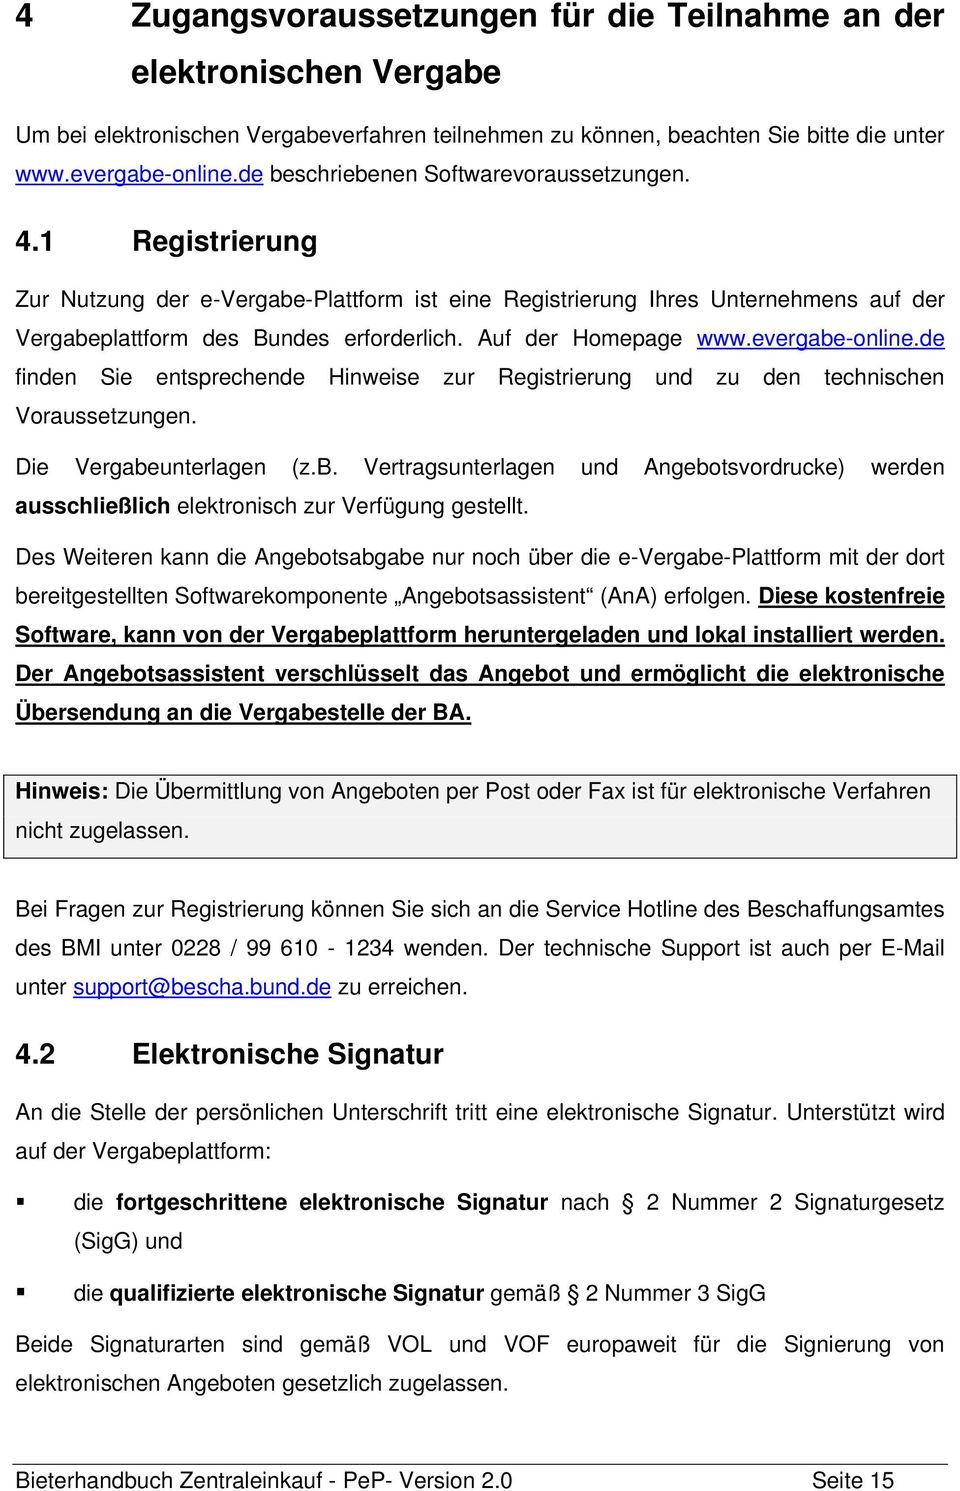 Auf der Homepage www.evergabe-online.de finden Sie entsprechende Hinweise zur Registrierung und zu den technischen Voraussetzungen. Die Vergabeunterlagen (z.b. Vertragsunterlagen und Angebotsvordrucke) werden ausschließlich elektronisch zur Verfügung gestellt.